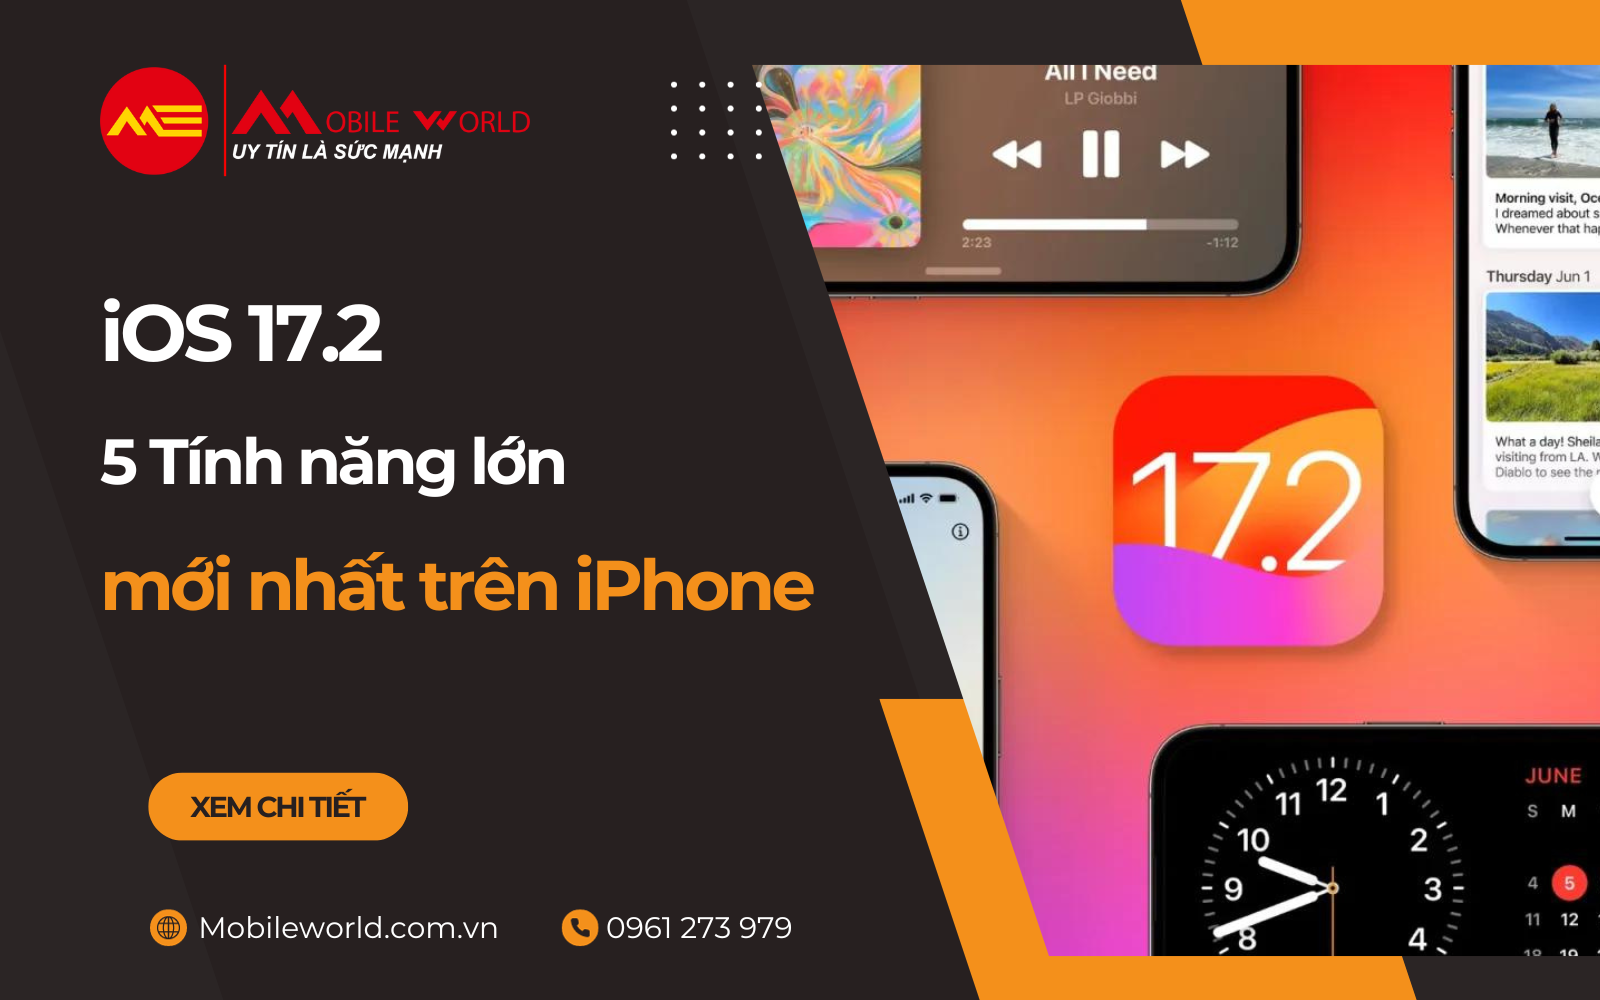 iOS 17.2 - 5 Tính năng lớn & mới 